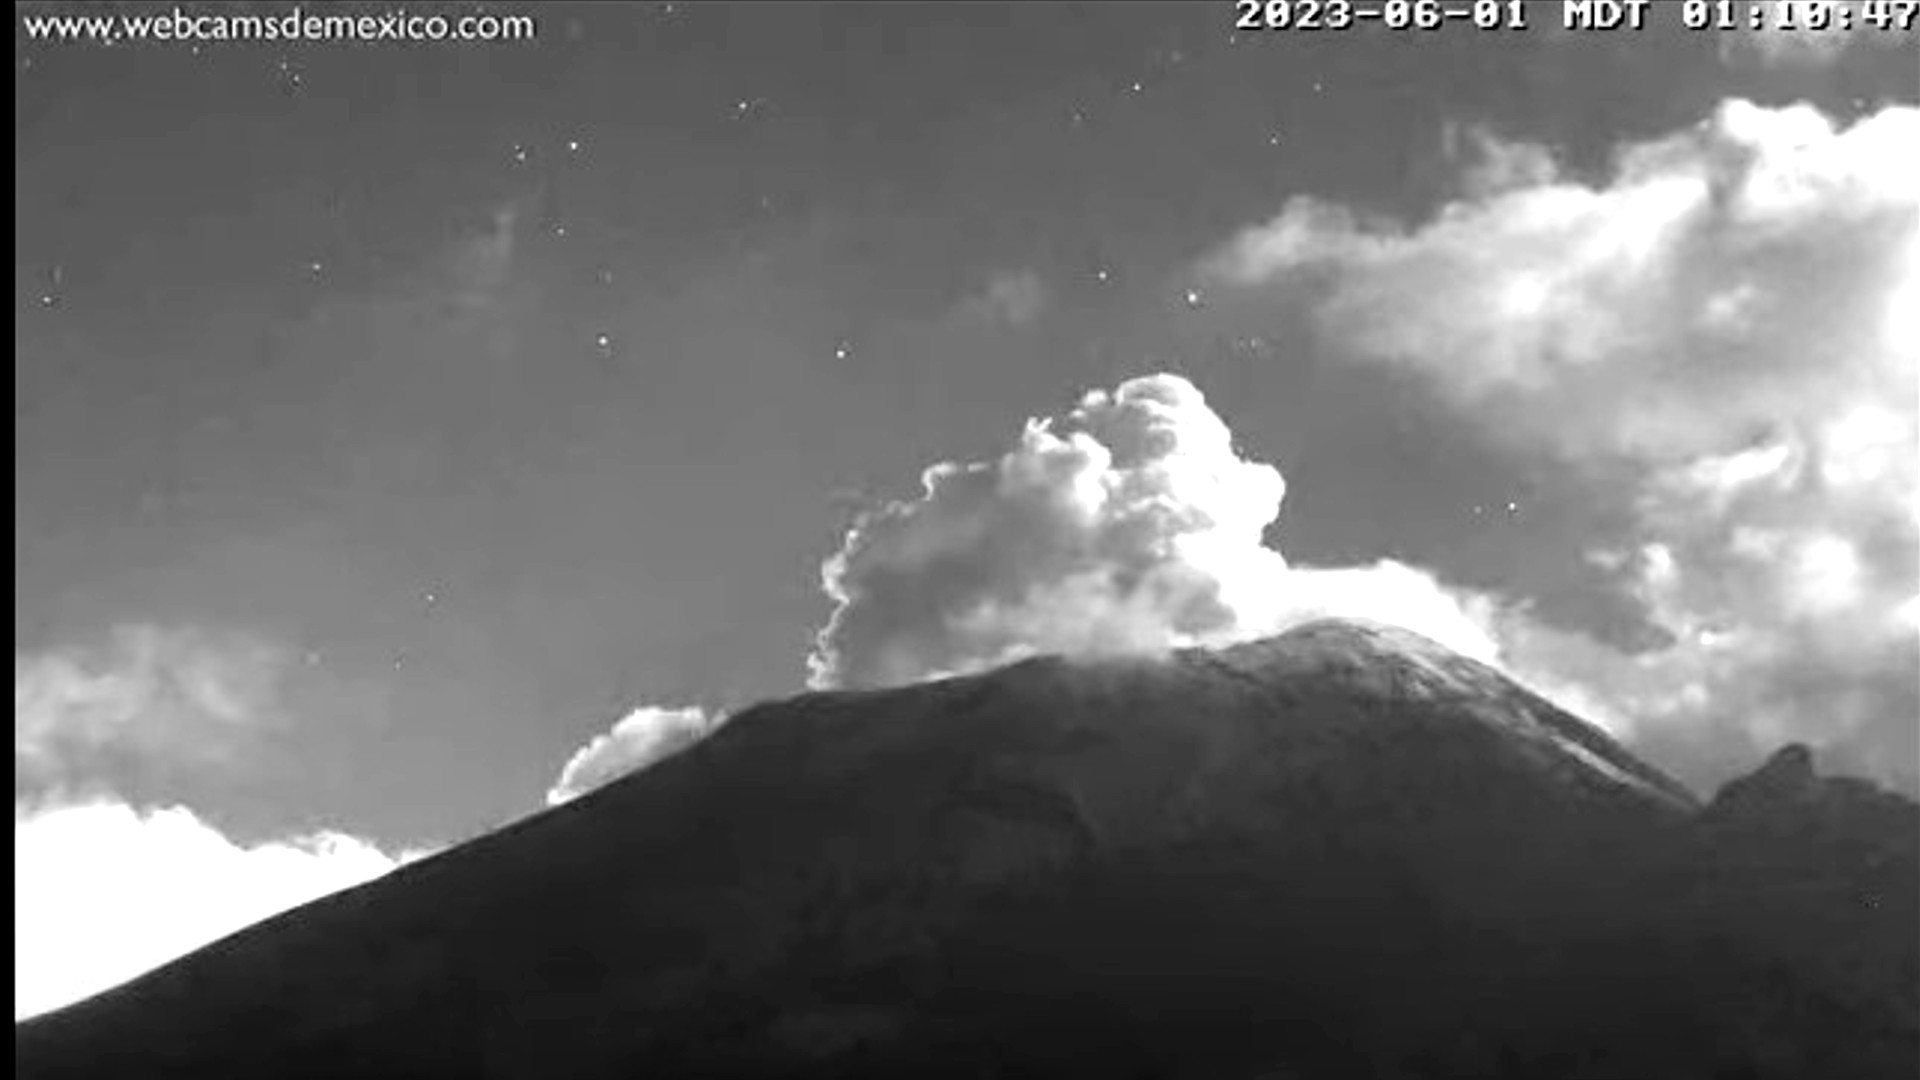 Volcán Popocatépetl hoy 1 de junio: alertaron caída de ceniza en alcaldías de la CDMX